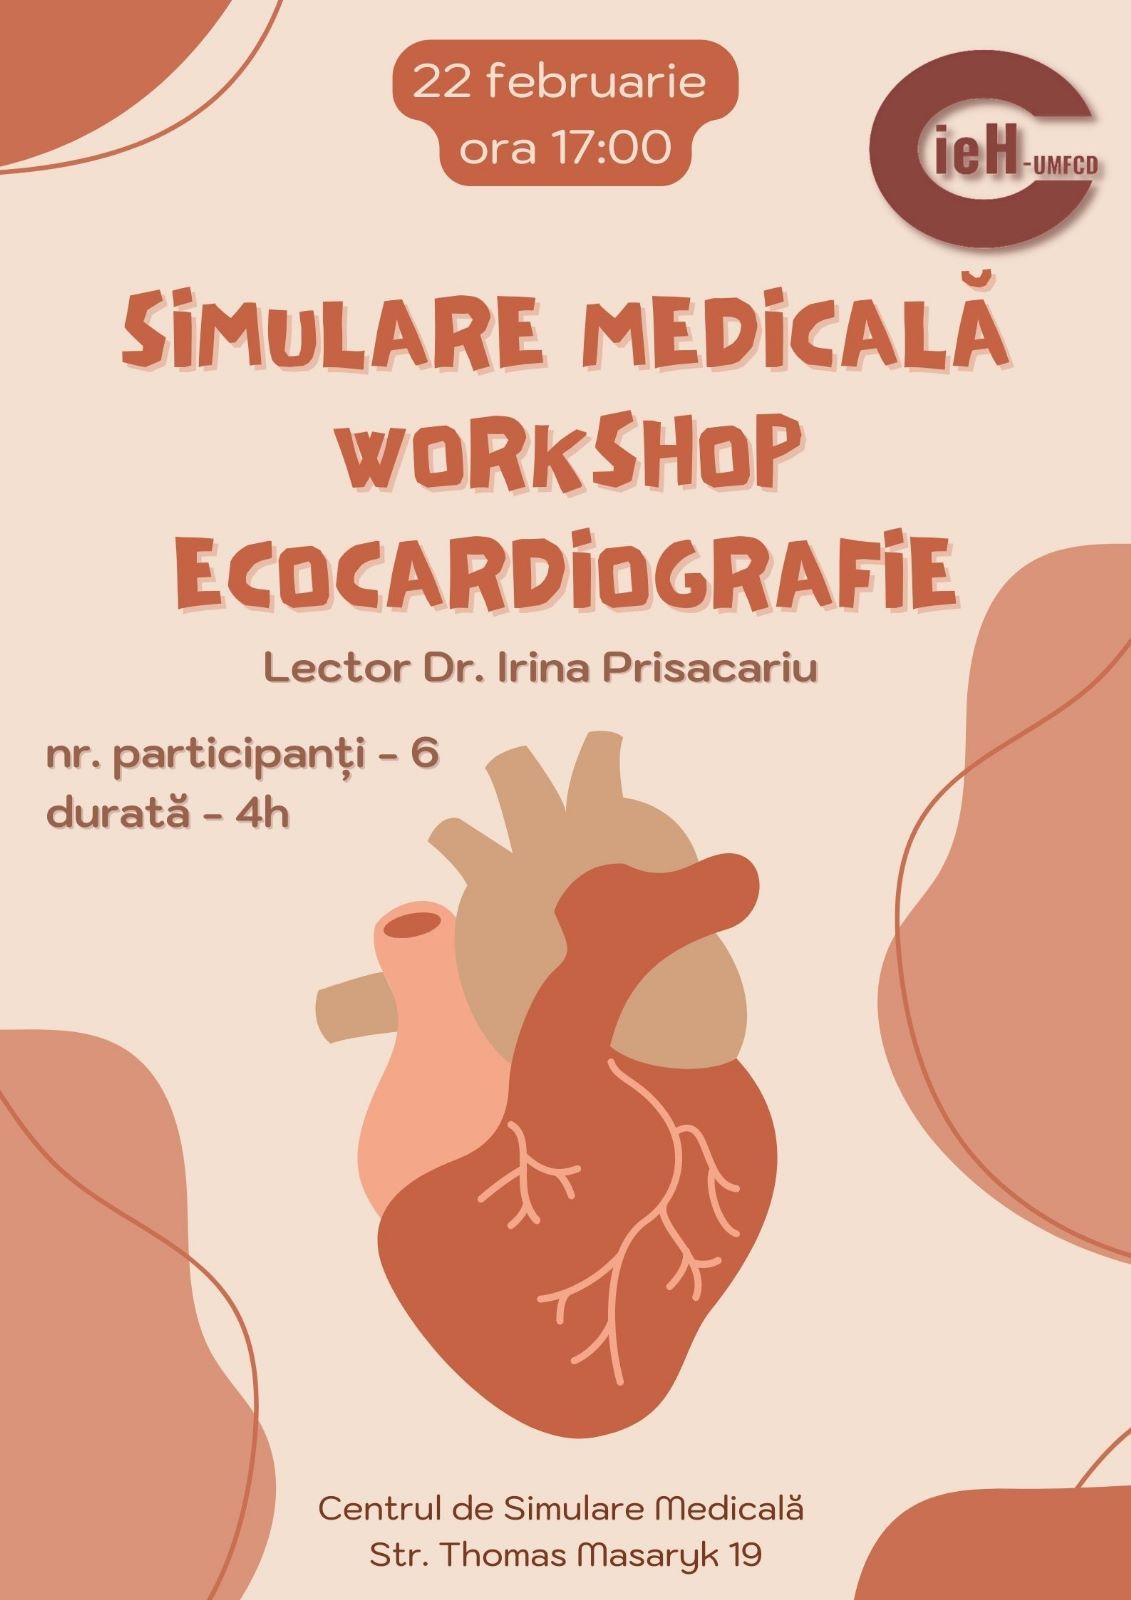 Un workshop de ecocardiografie transtoracică va fi organizat în 22 februarie